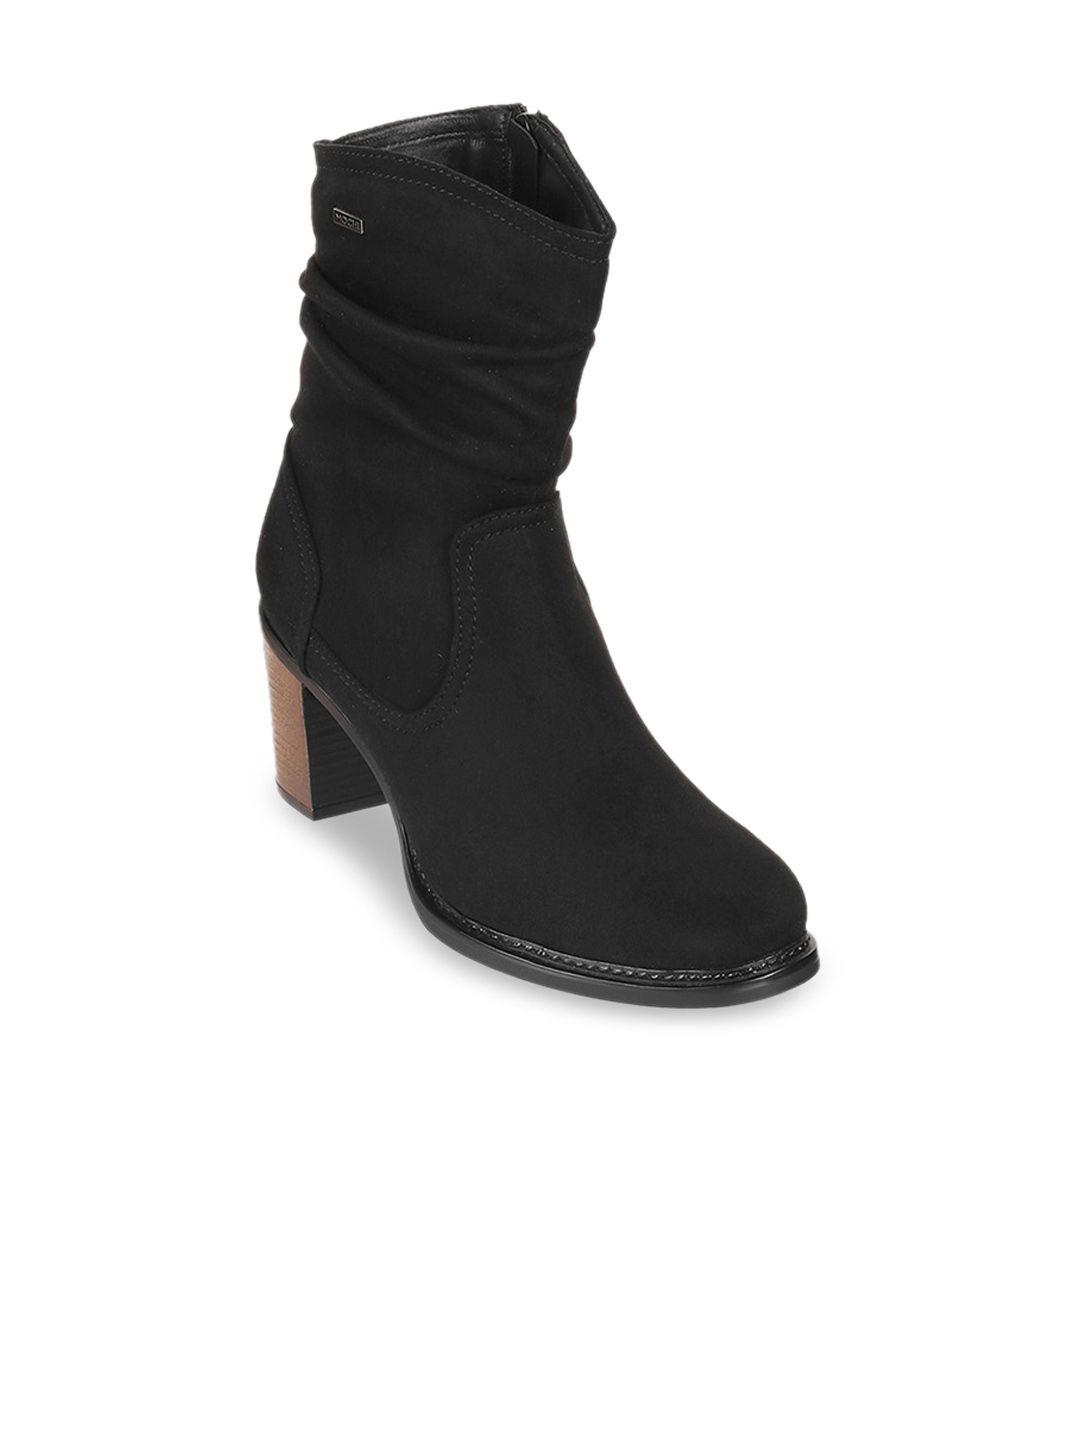 mochi-women-high-top-block-heel-boots